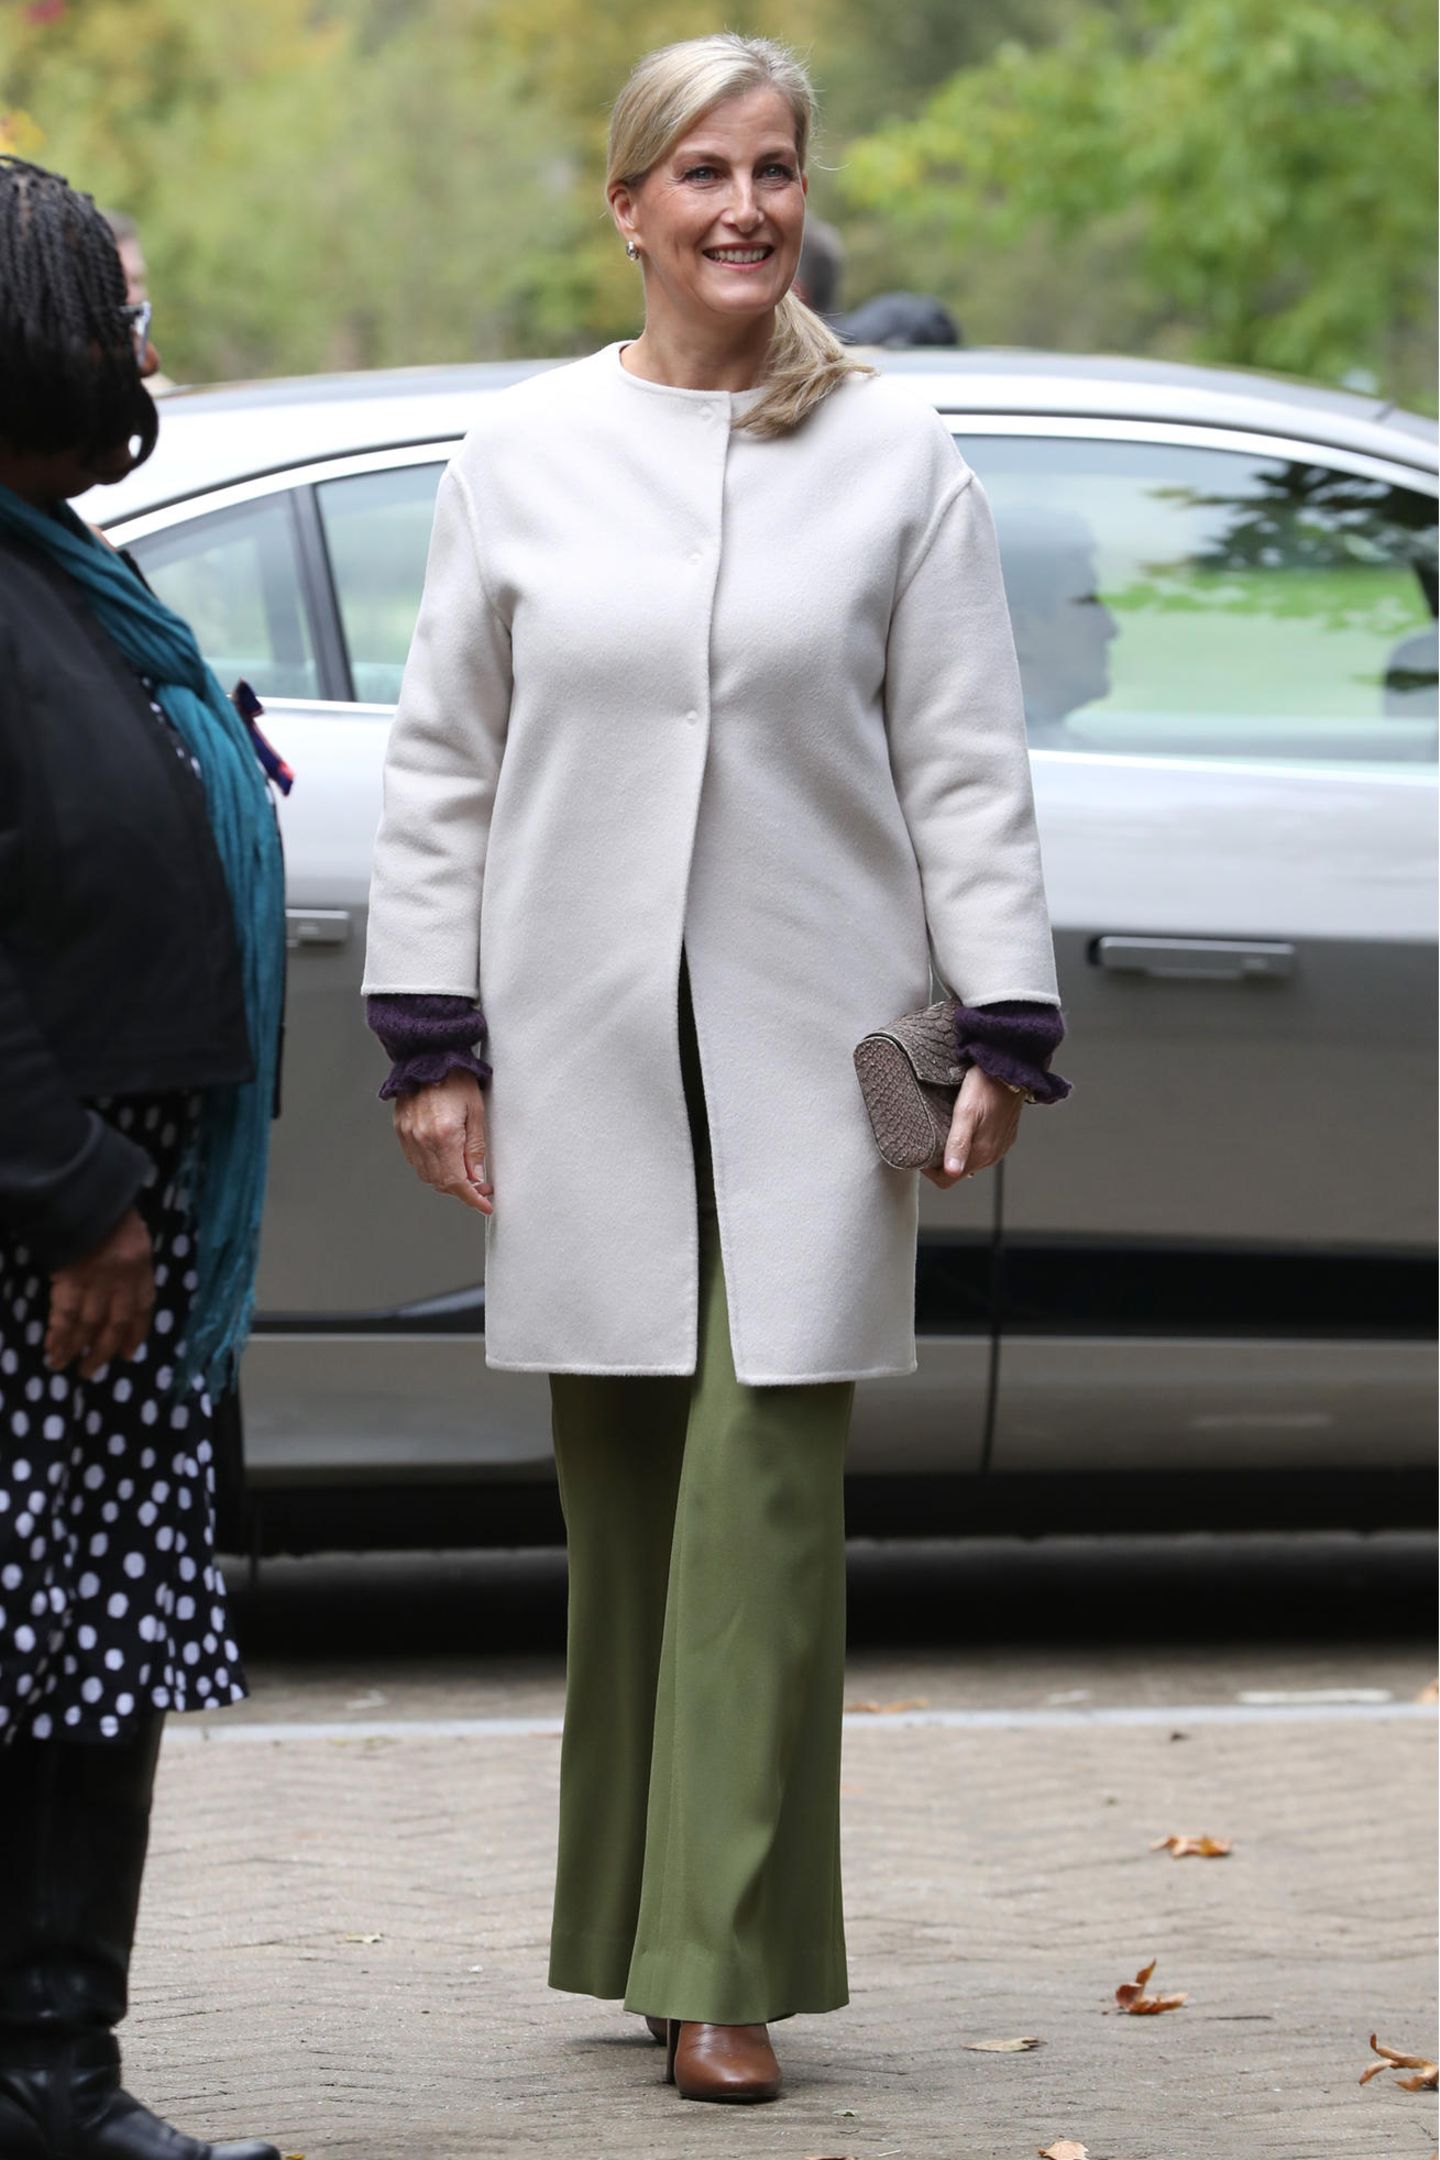 Den Rest des Looks hält die Gräfin eher schlicht. Sie trägt eine khakifarbene Hose mit ausgestelltem Bein und braune Stiefel. Dazu kombiniert sie einen cremeweißen Mantel. 